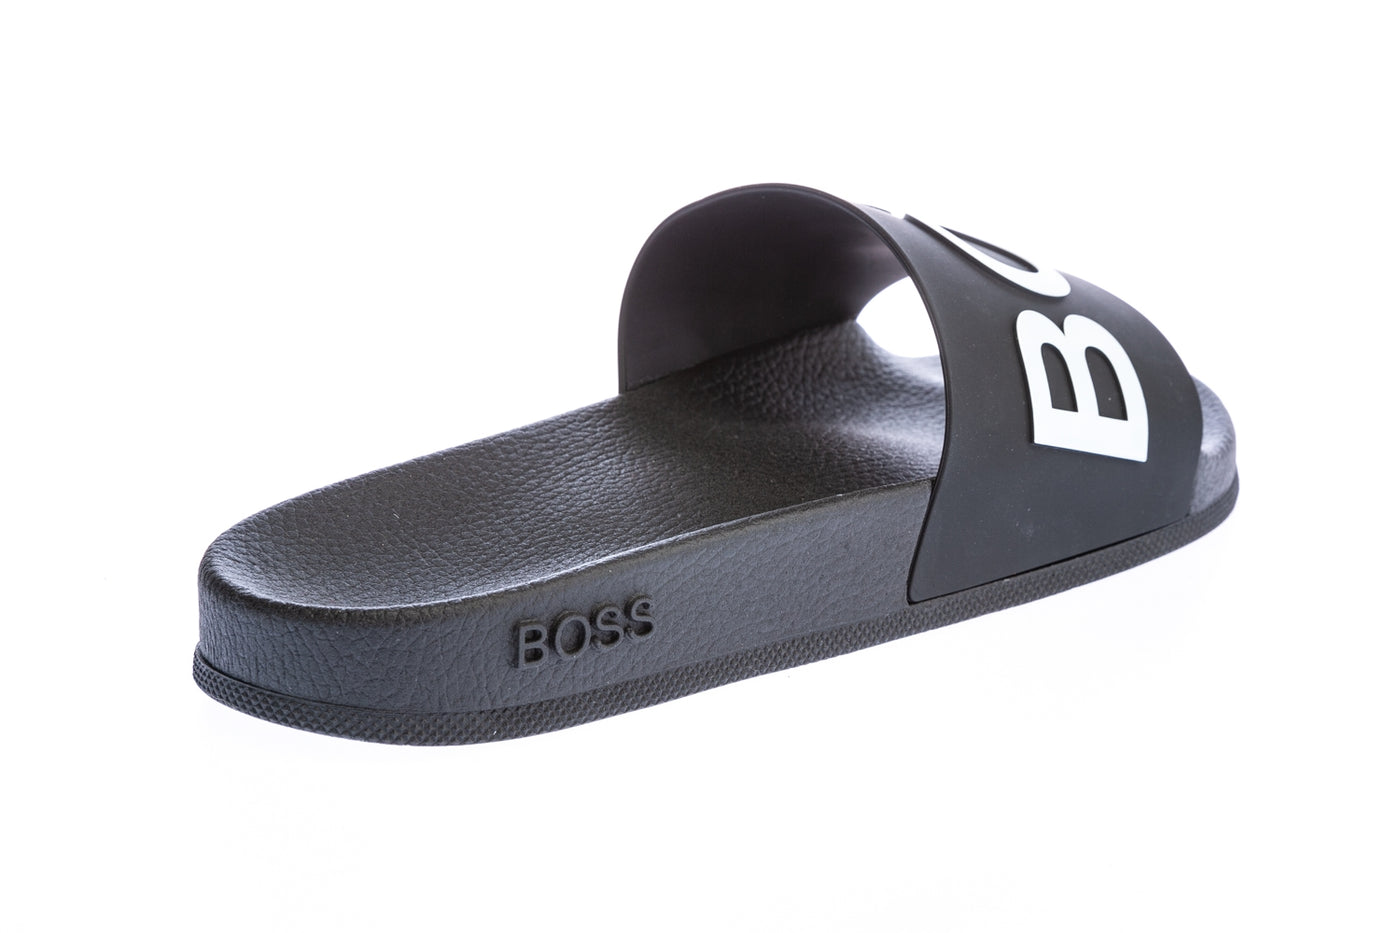 BOSS Bay_Slid Slide in Black & White